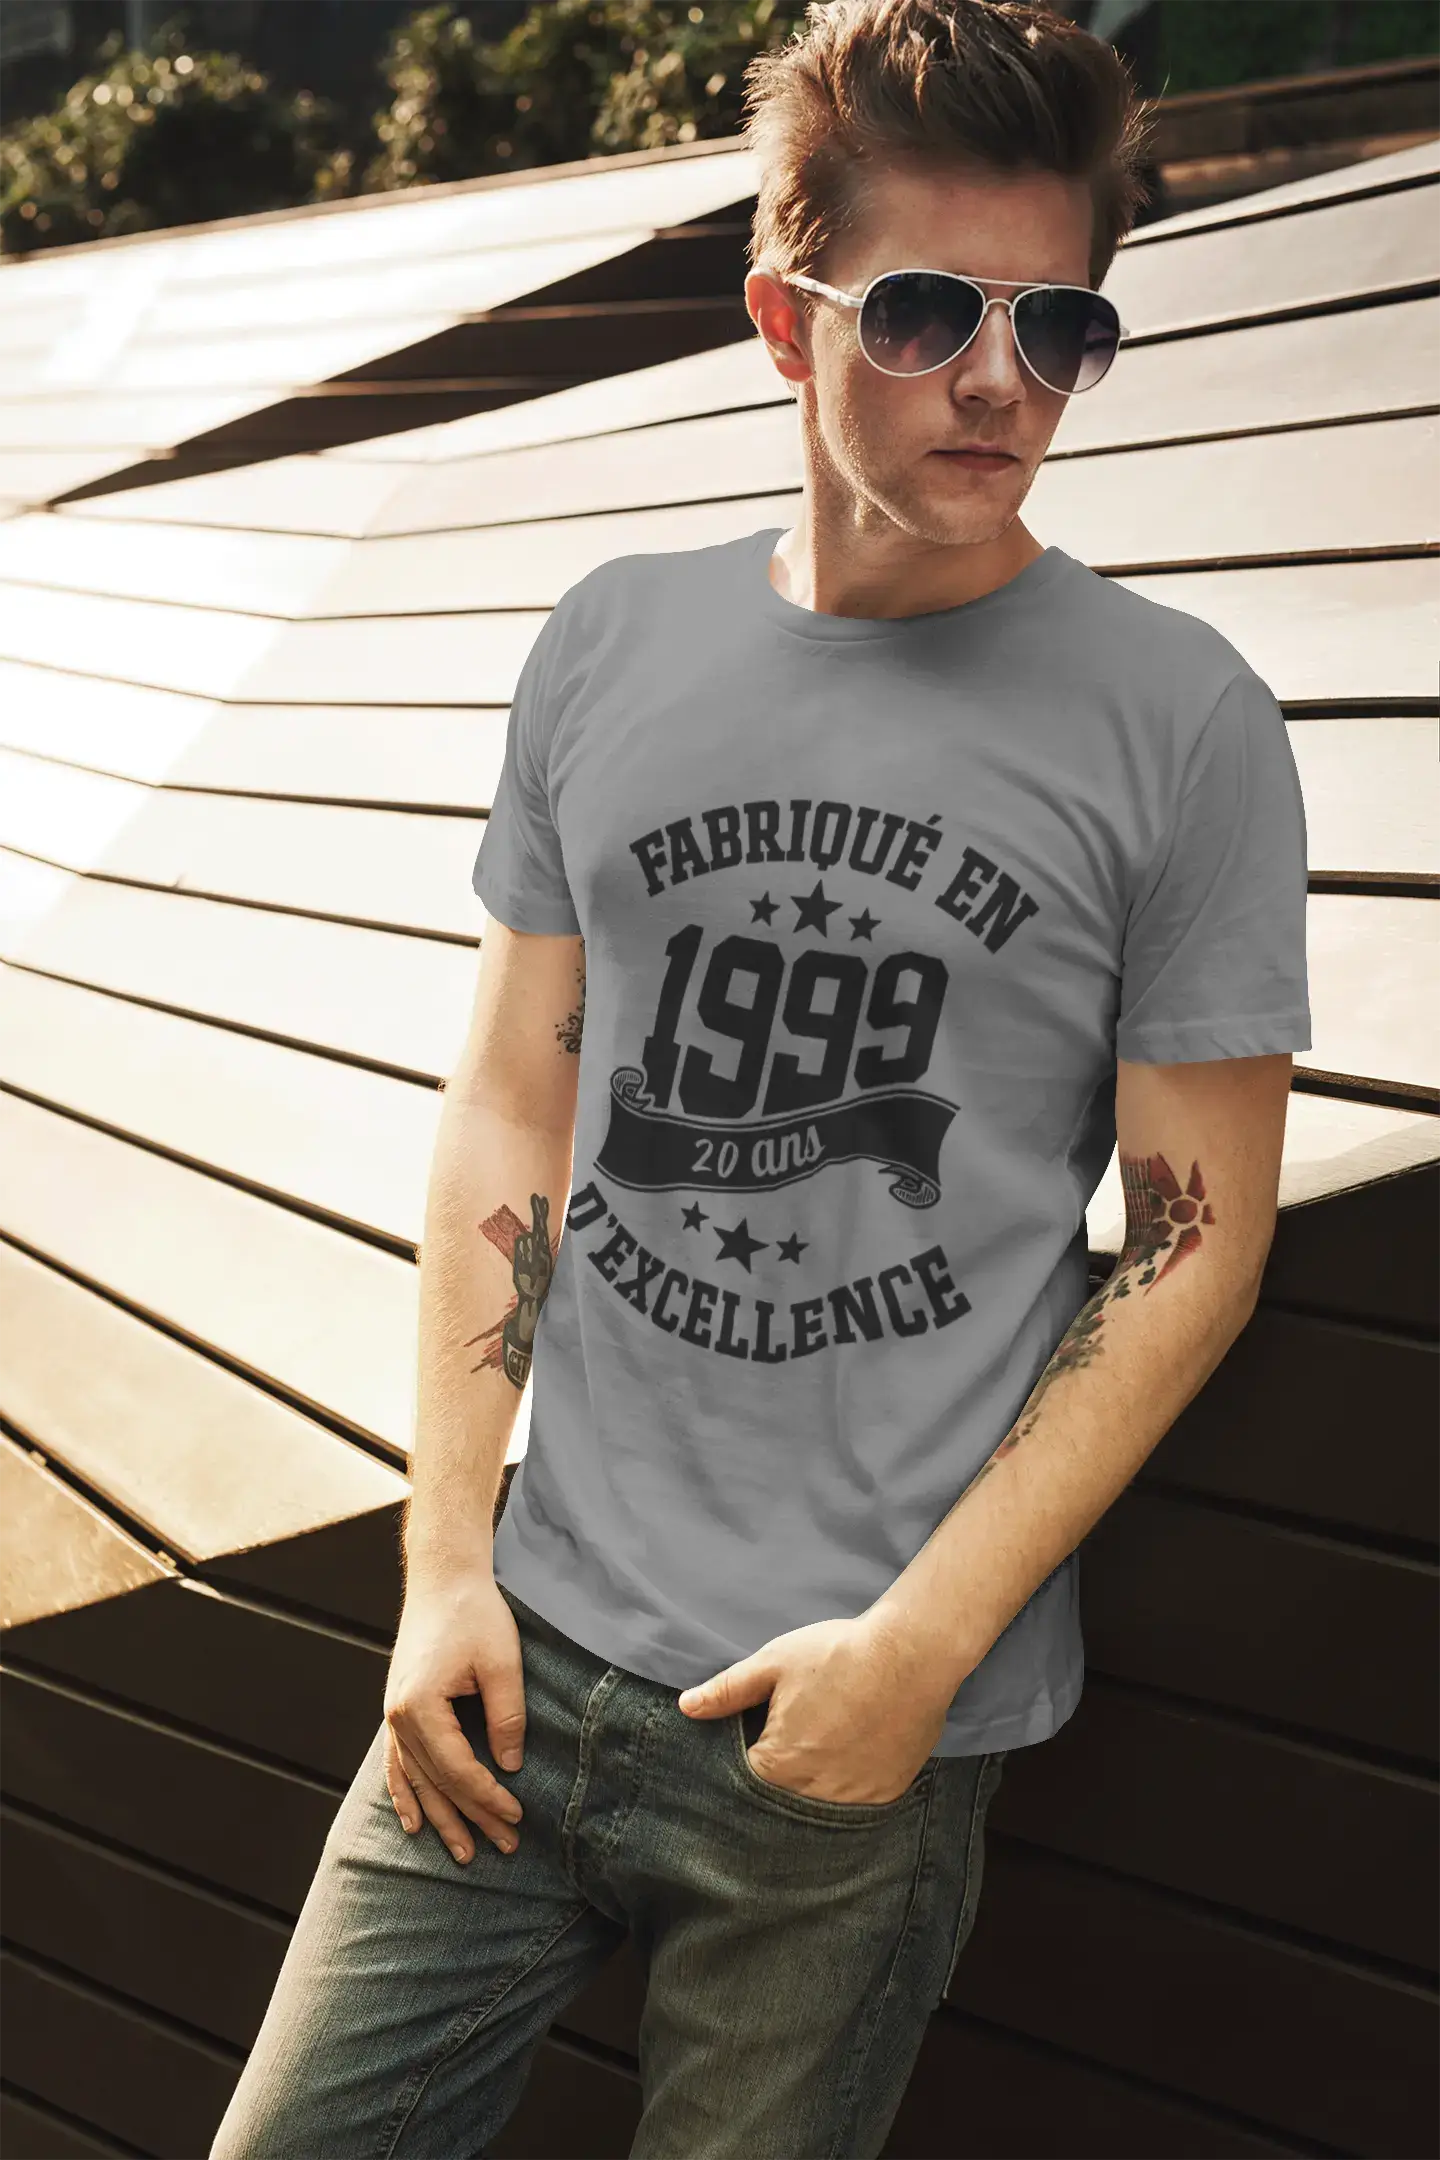 ULTRABASIC - Fabriqué en 1999, 20 Ans d'être Génial Unisex T-Shirt Denim